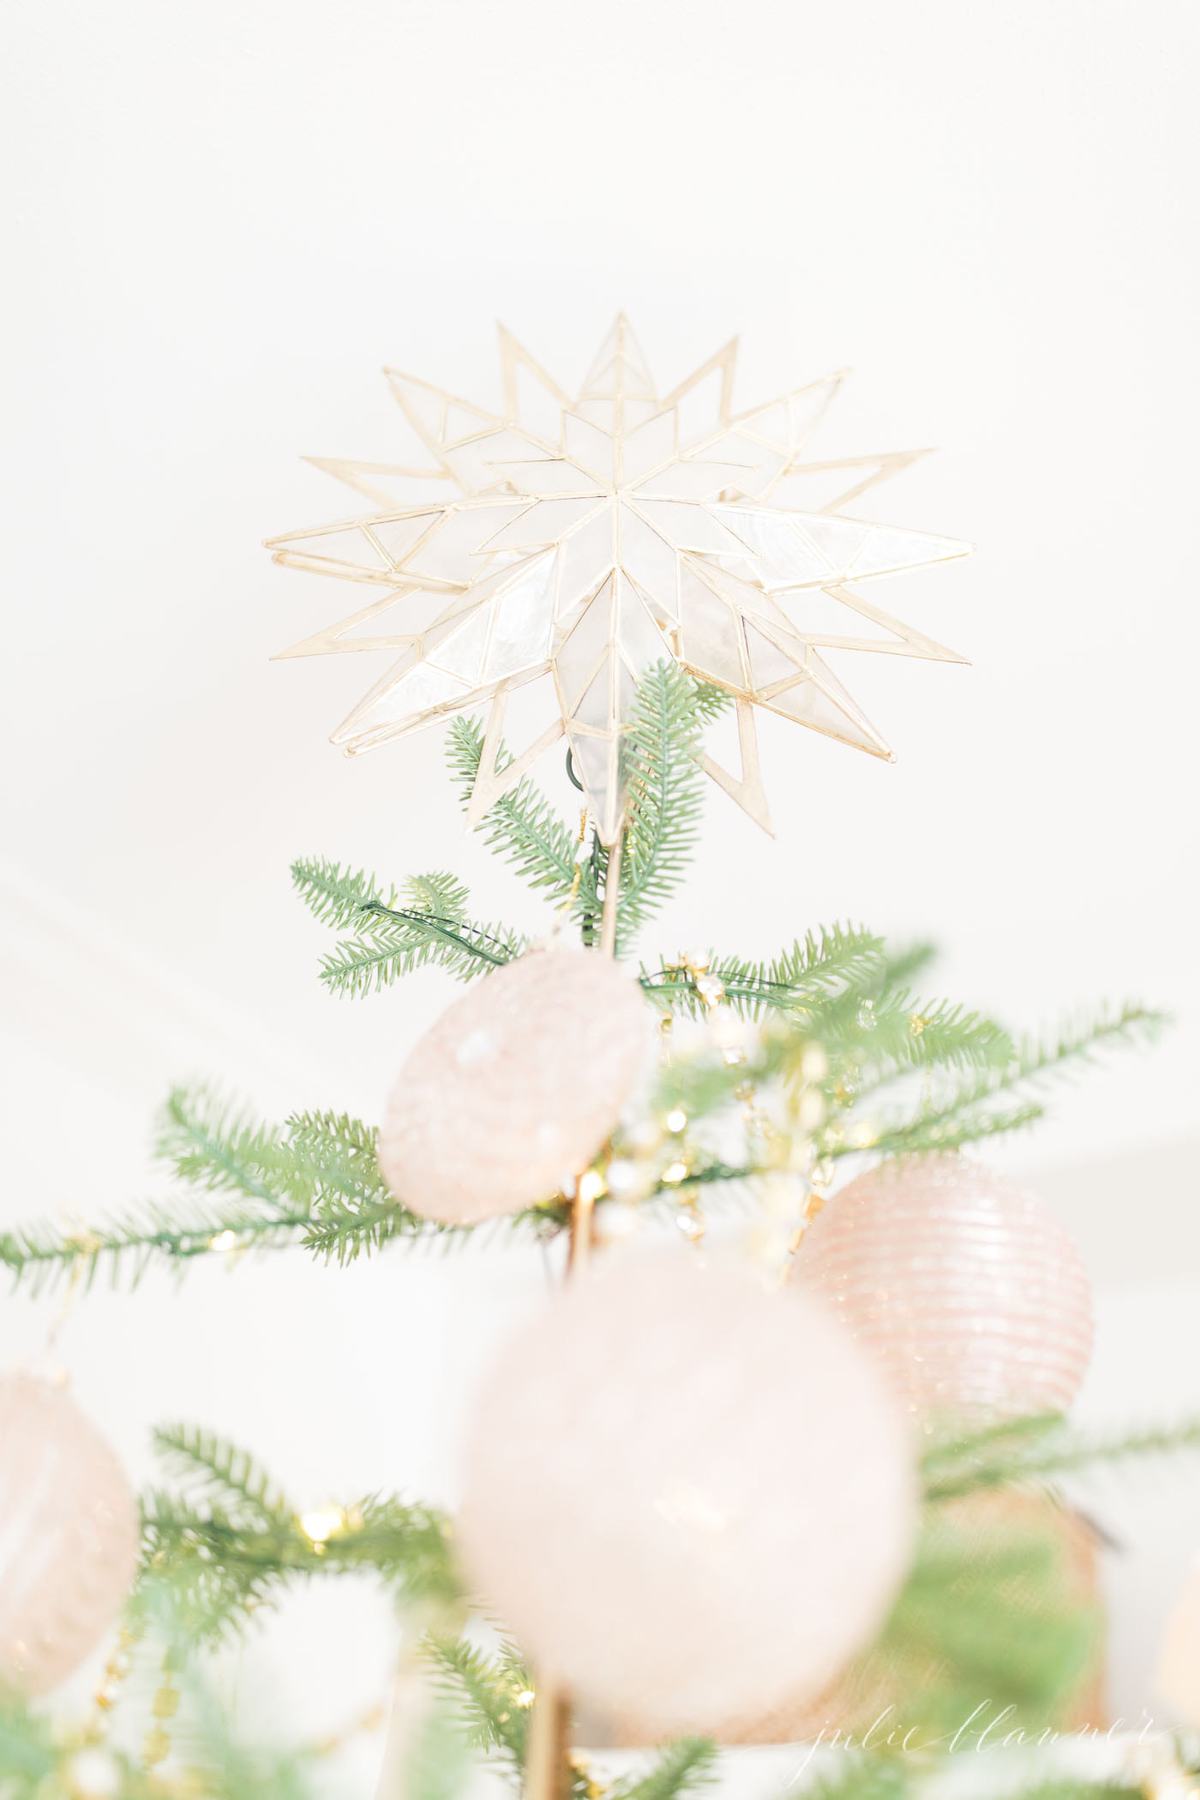 稀疏的圣诞树，粉红色的装饰品和金色的花环